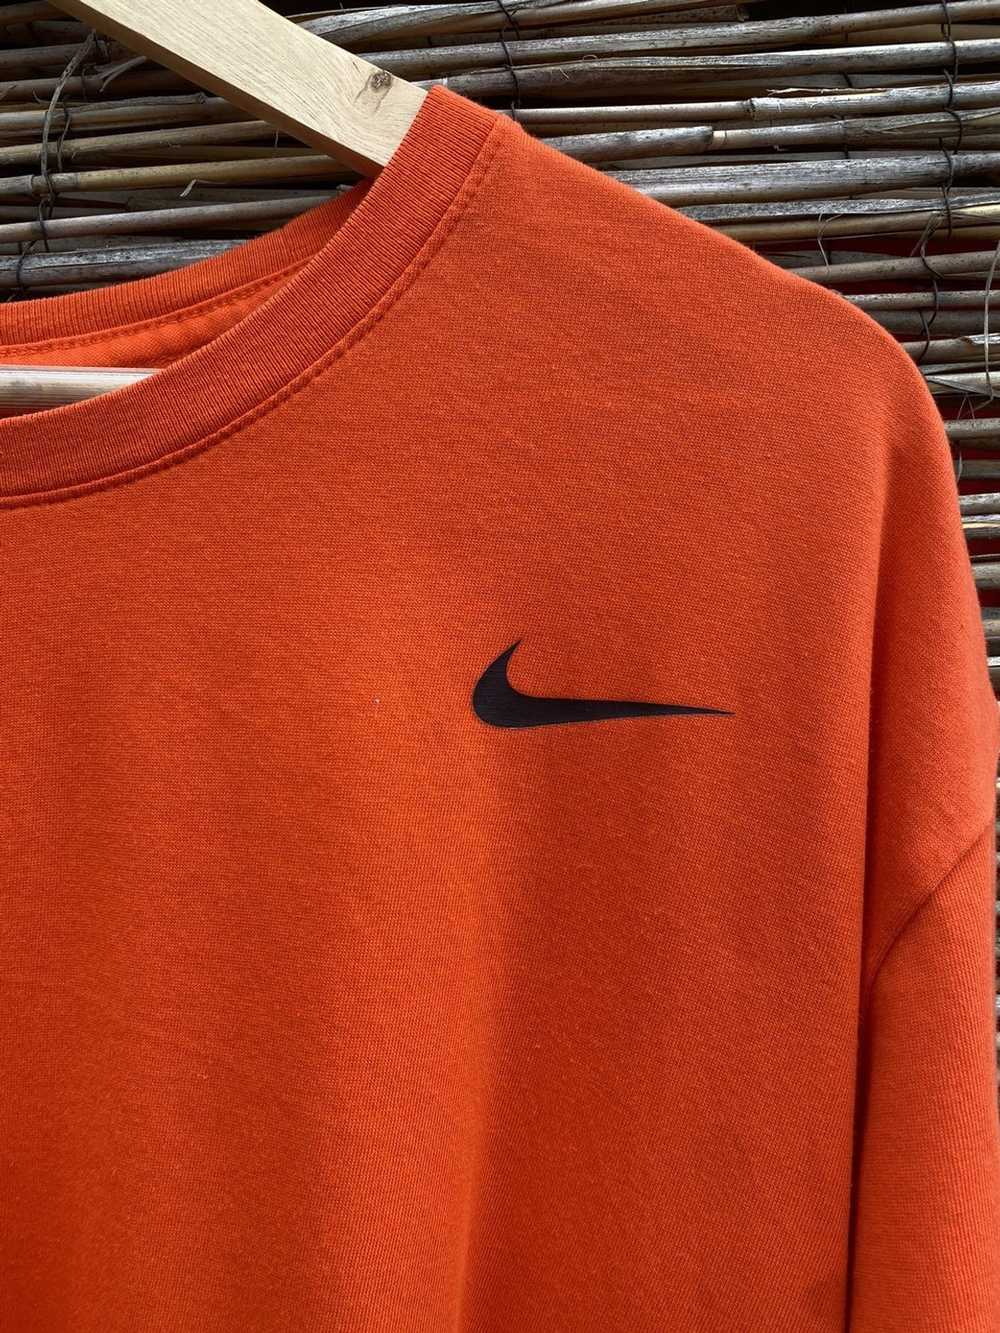 Nike Nike dri-fit T-shirt - image 2